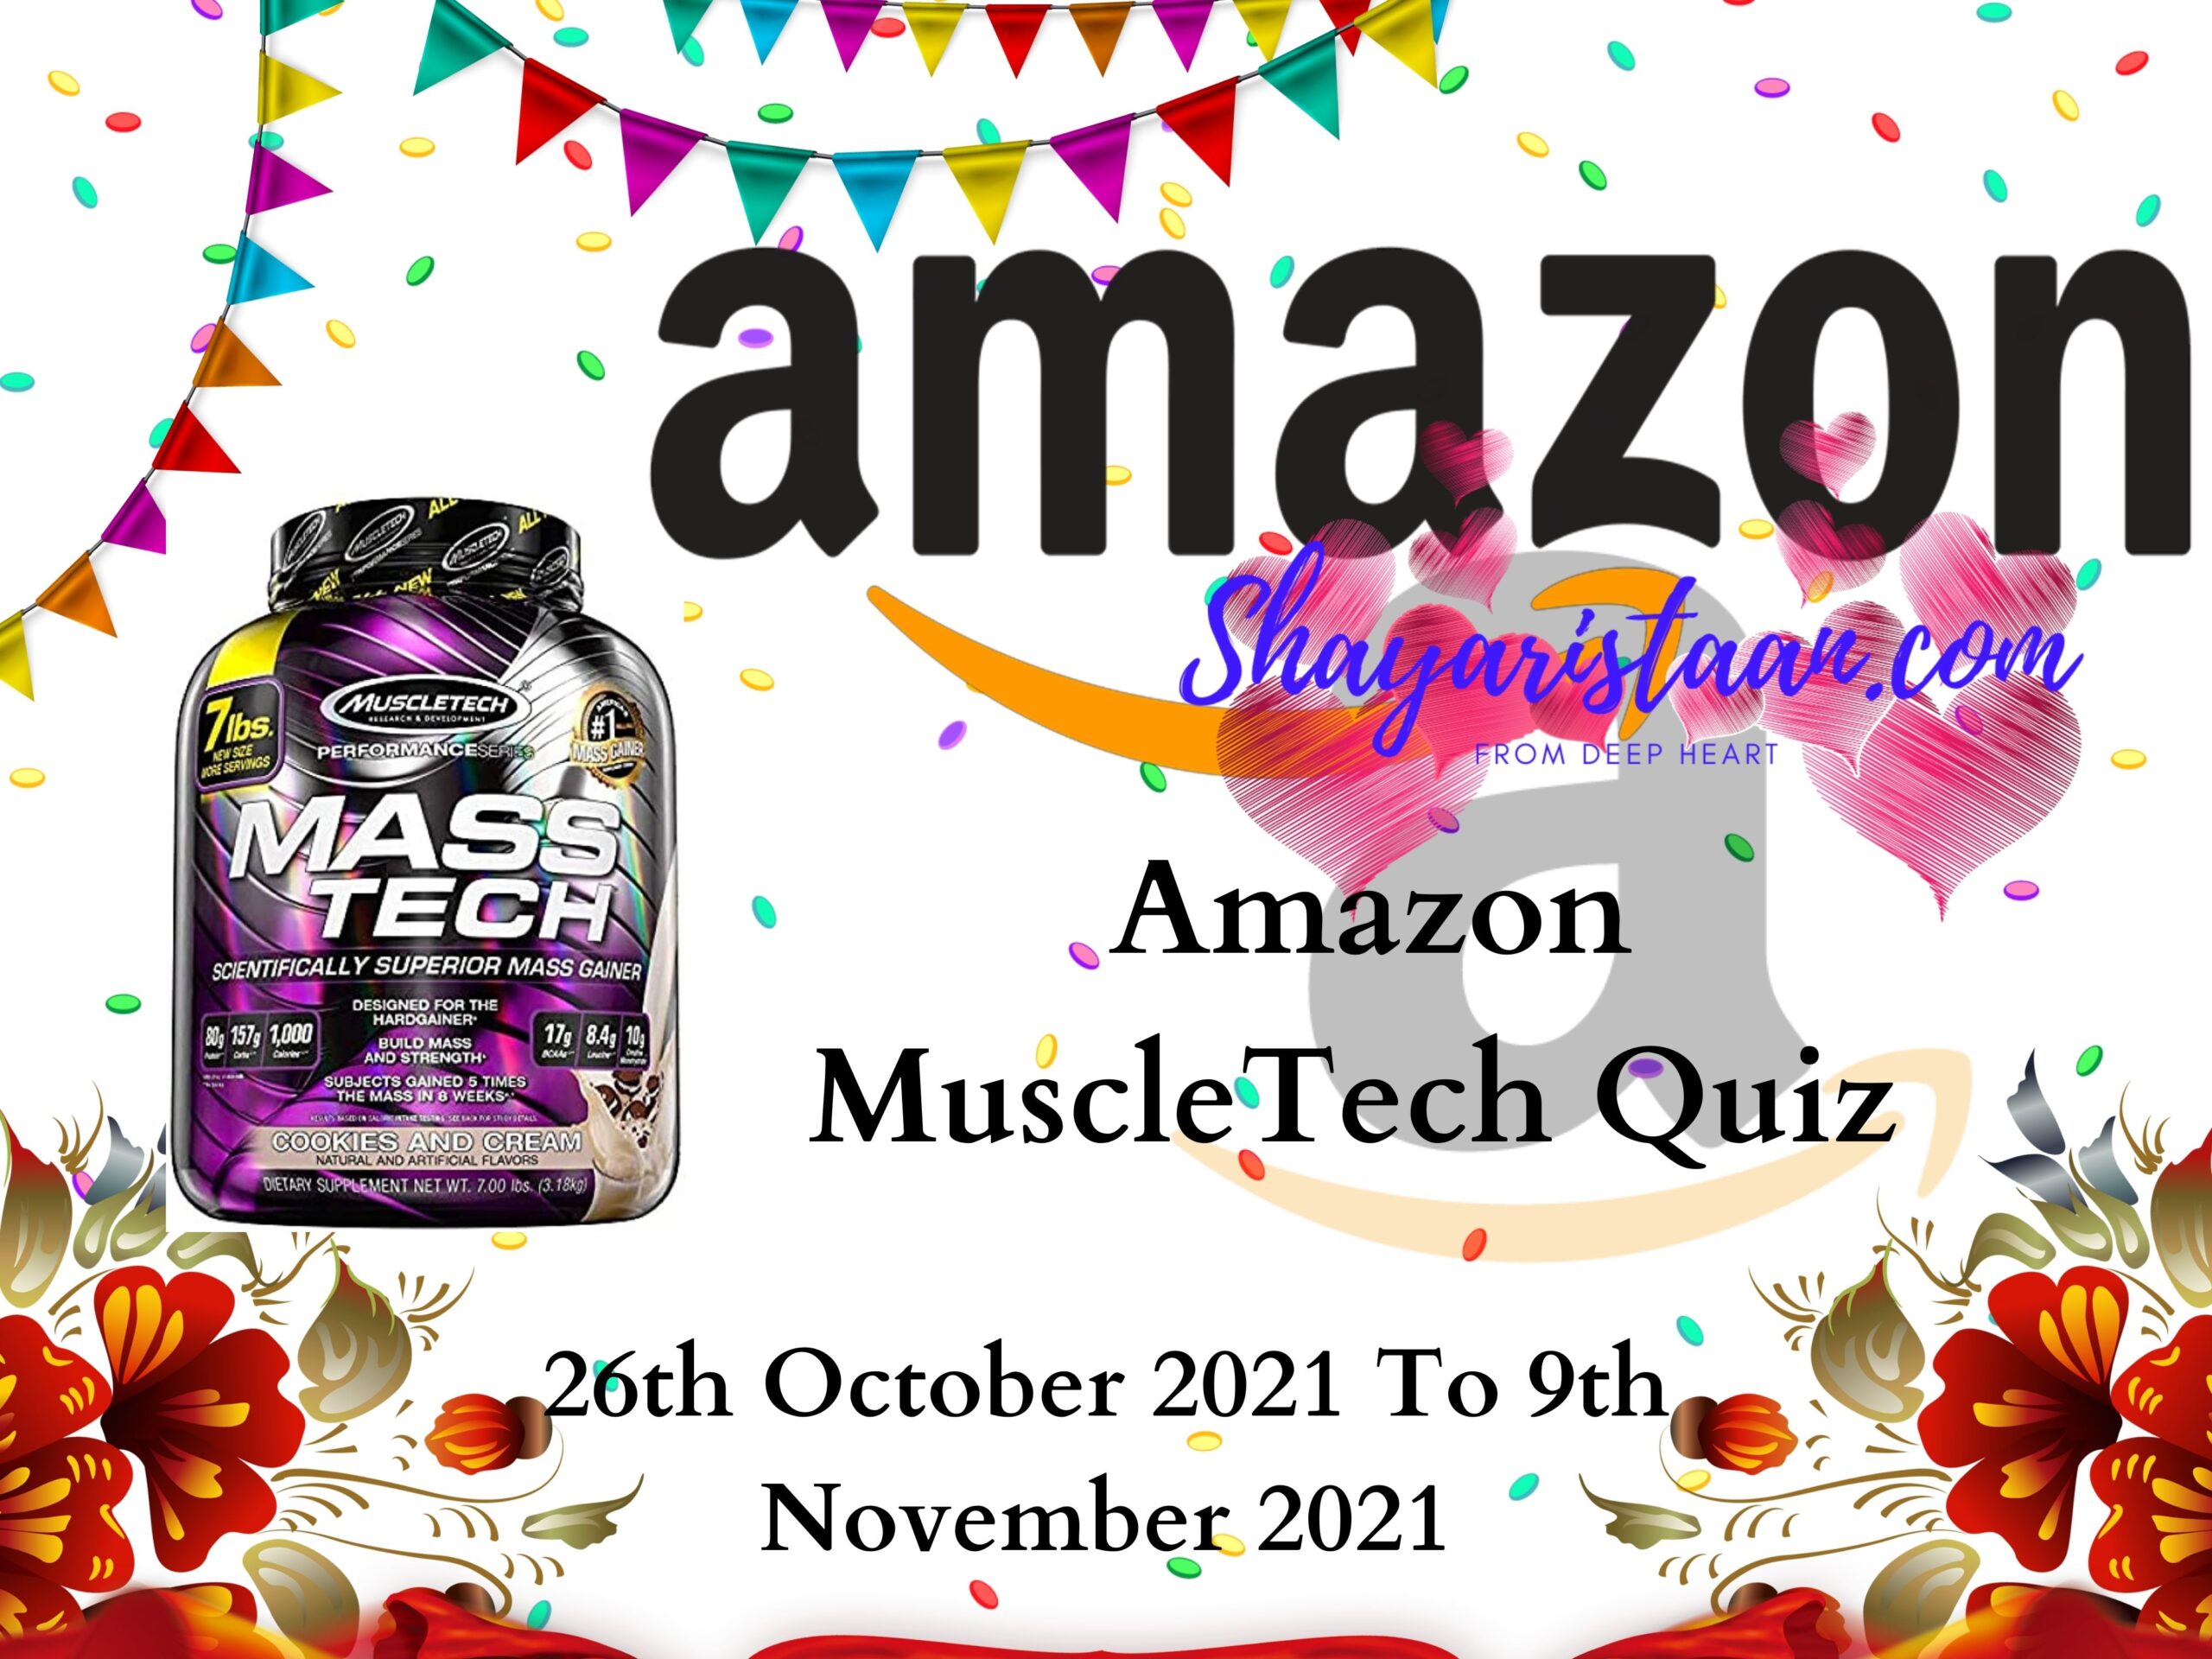 Amazon MuscleTech Quiz Answers